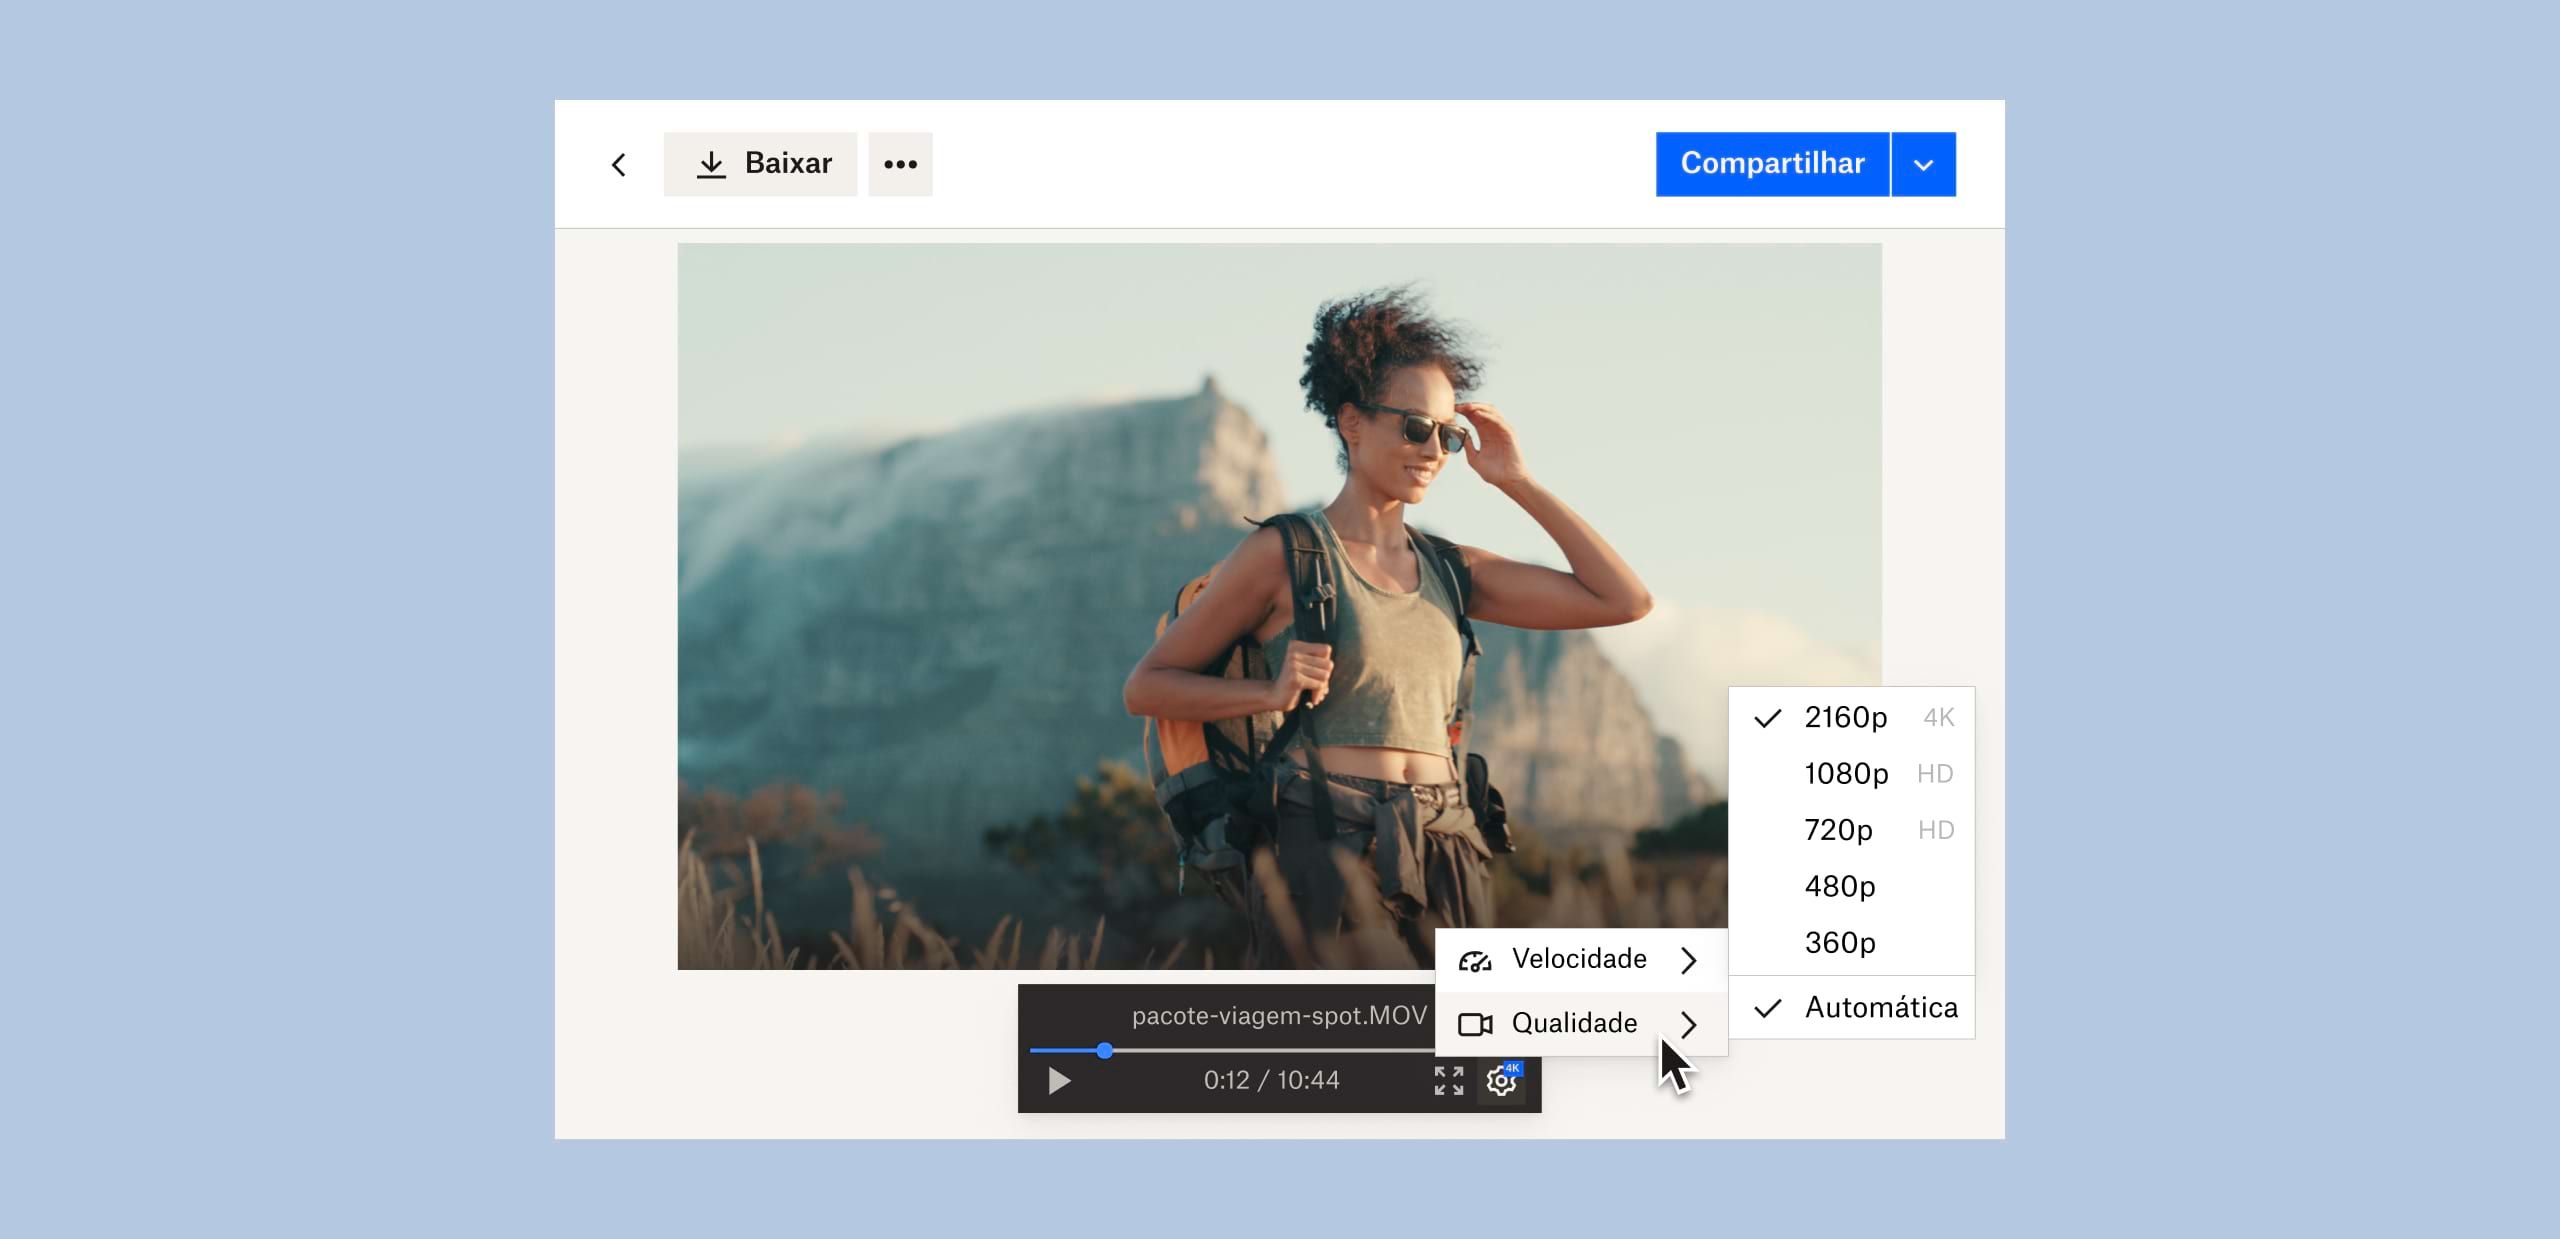 Usuário mudando a qualidade de imagem de um arquivo de vídeo salvo no Dropbox